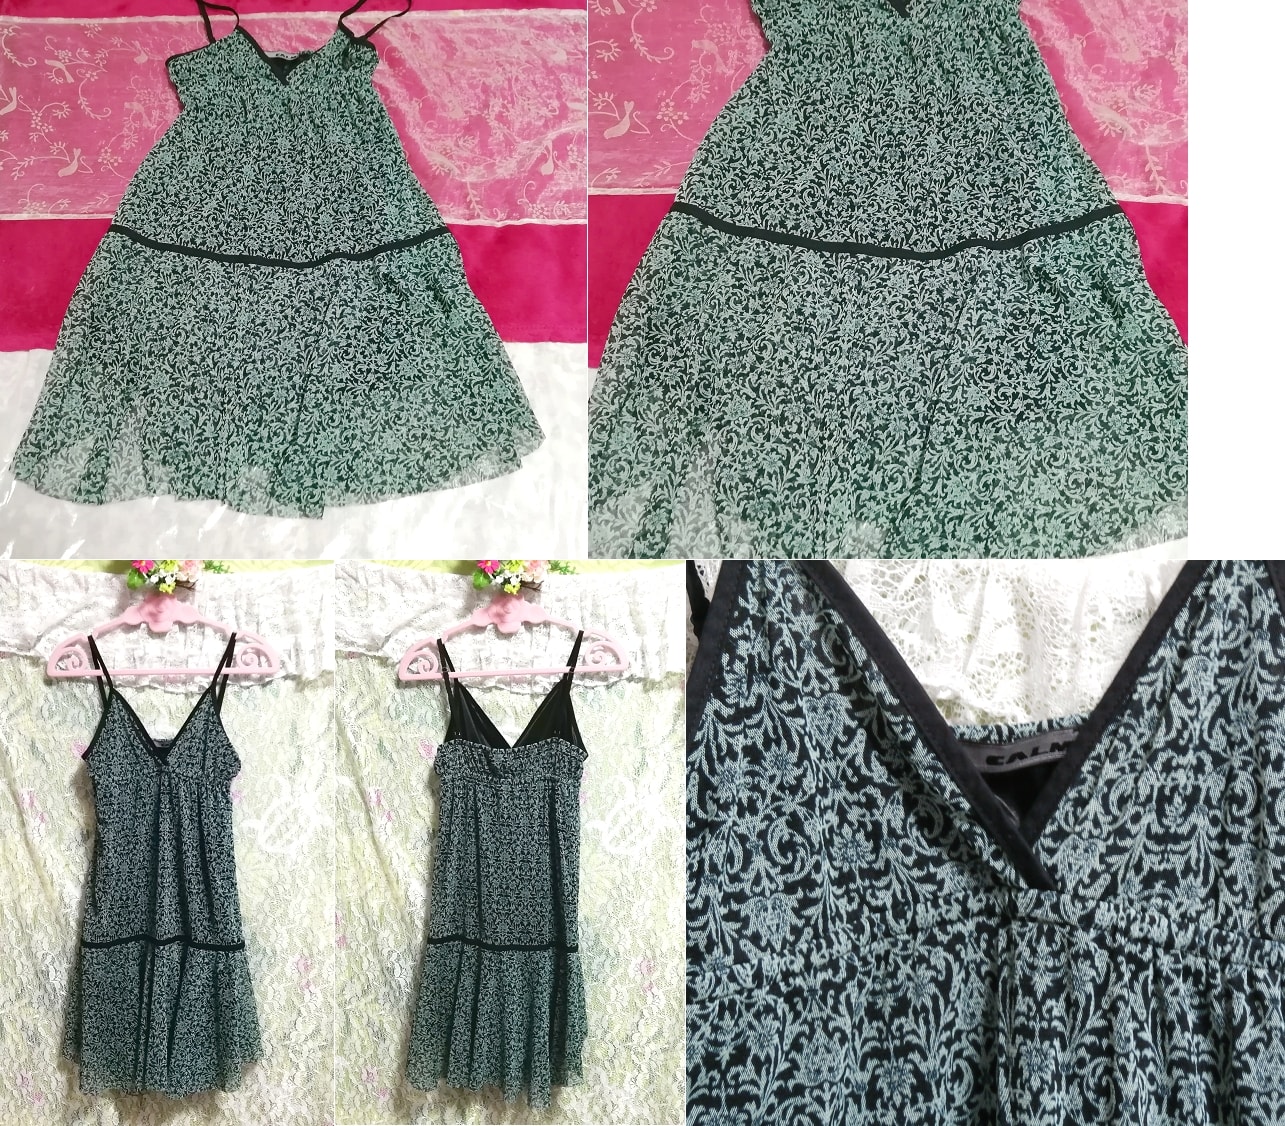 Dunkelgrünes Negligé-Nachthemd mit Blumenmuster und Babydoll-Kleid, Mode, Frauenmode, Leibchen